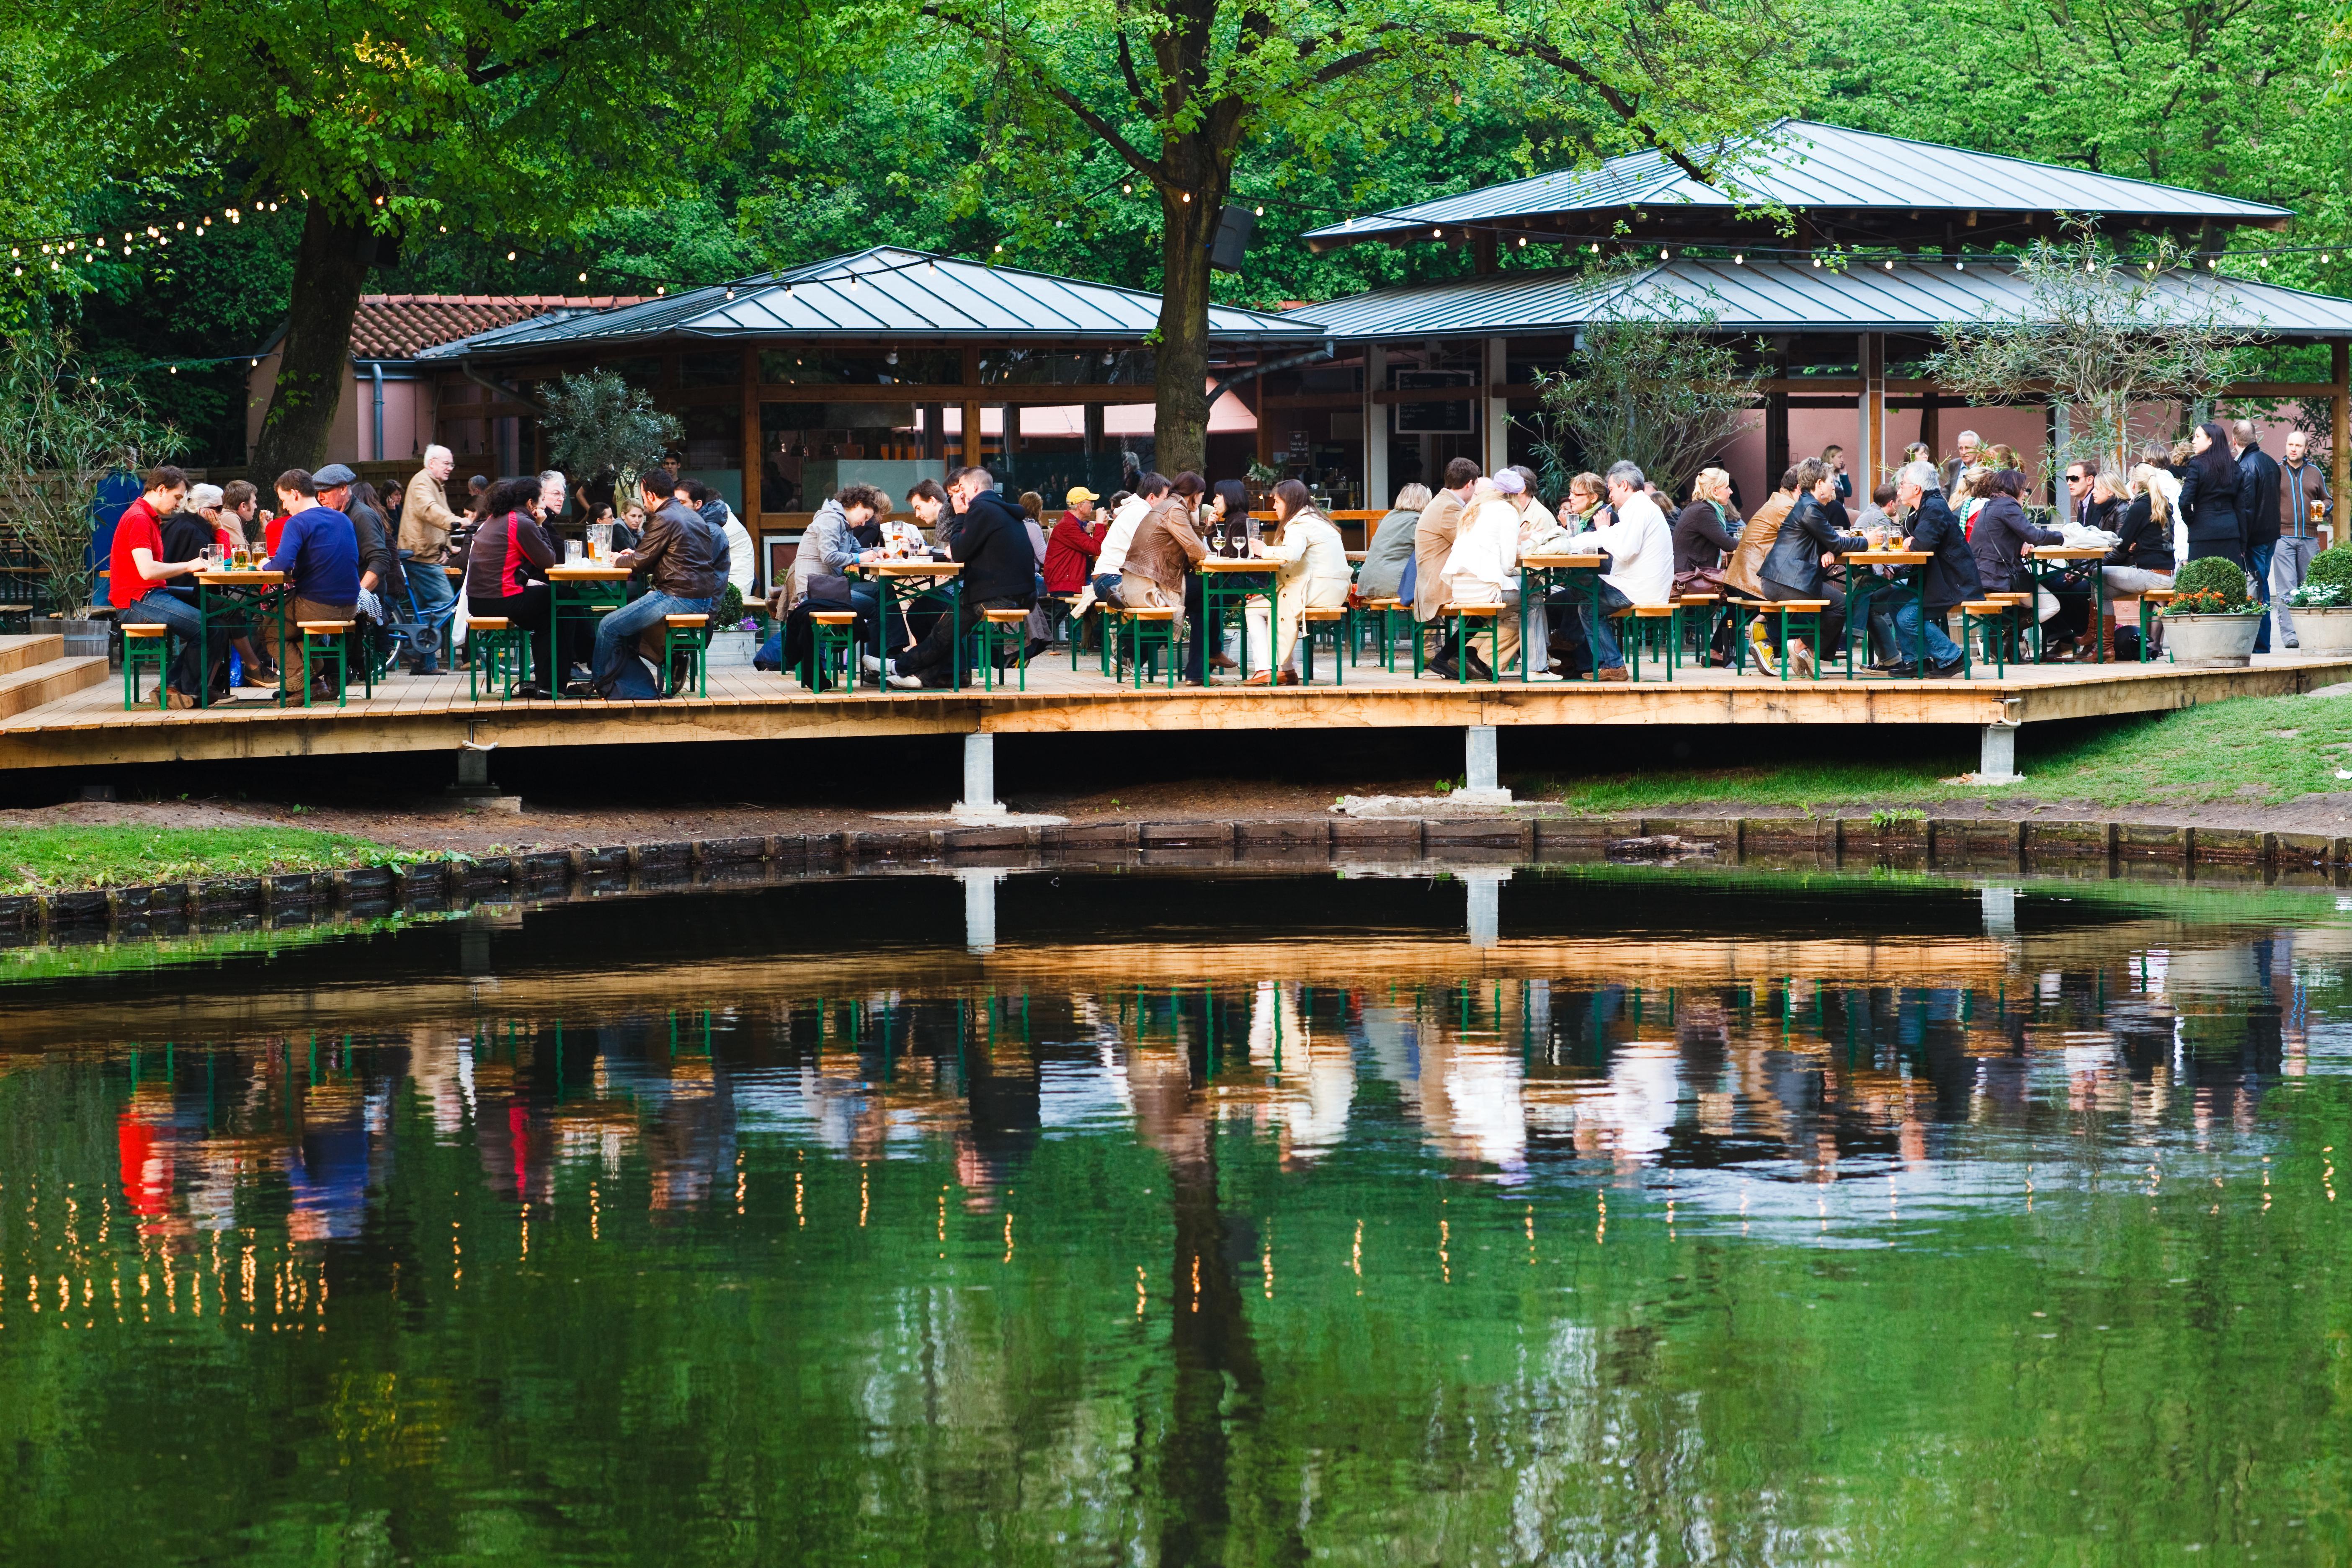 Europe's best summer travel destinations: The Tiergarten in Berlin